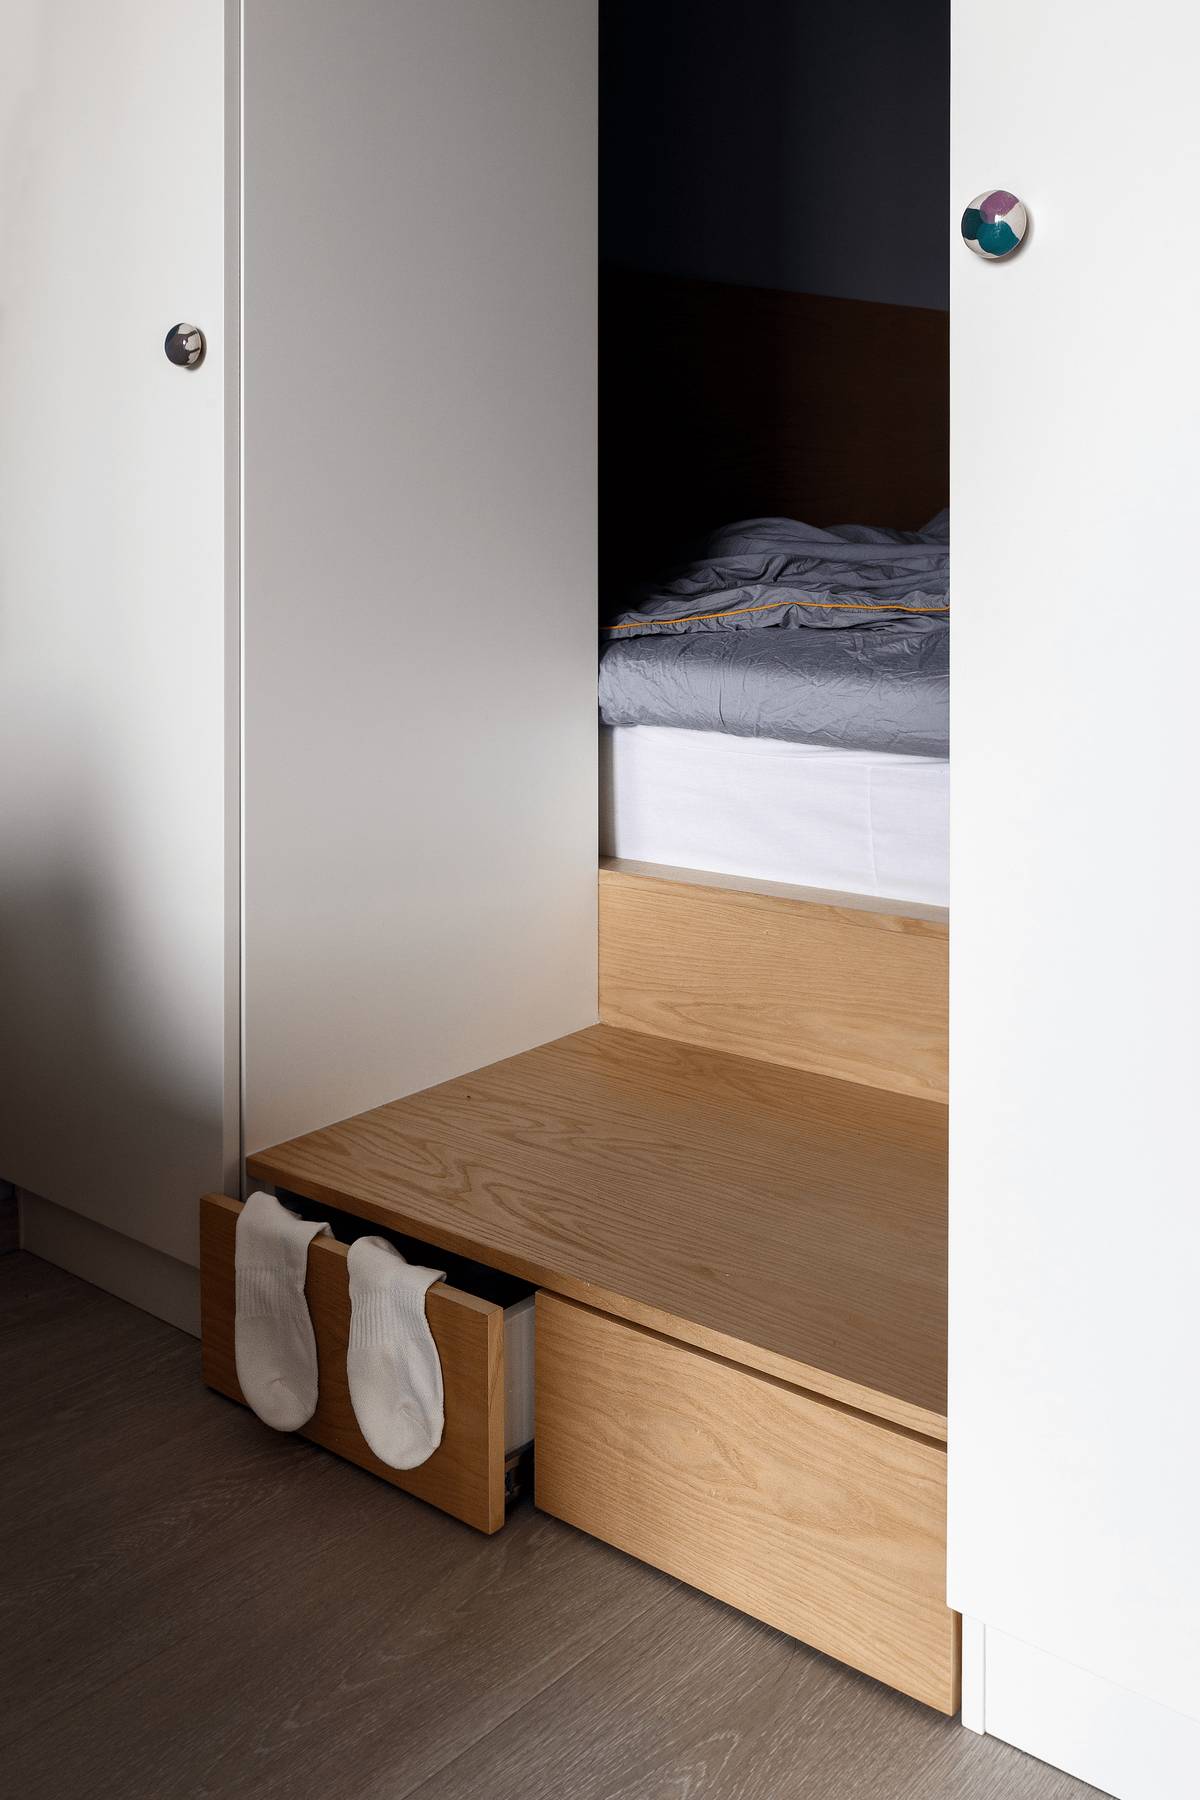 Bậc tam cấp gỗ nhỏ nhắn dẫn lối lên phòng ngủ cũng có thiết kế tích hợp hộc lưu trữ tất vớ và những món đồ nhỏ để tối ưu hóa mọi góc trong căn hộ.